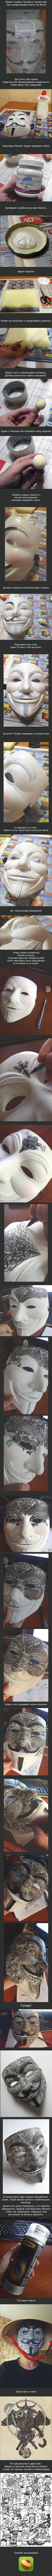 Рисуем на маске Буду показывать как я рисовал на маске Гая Фокса  гай фокс, анонимус, рисунок, маска, длиннопост, моё, наркомания